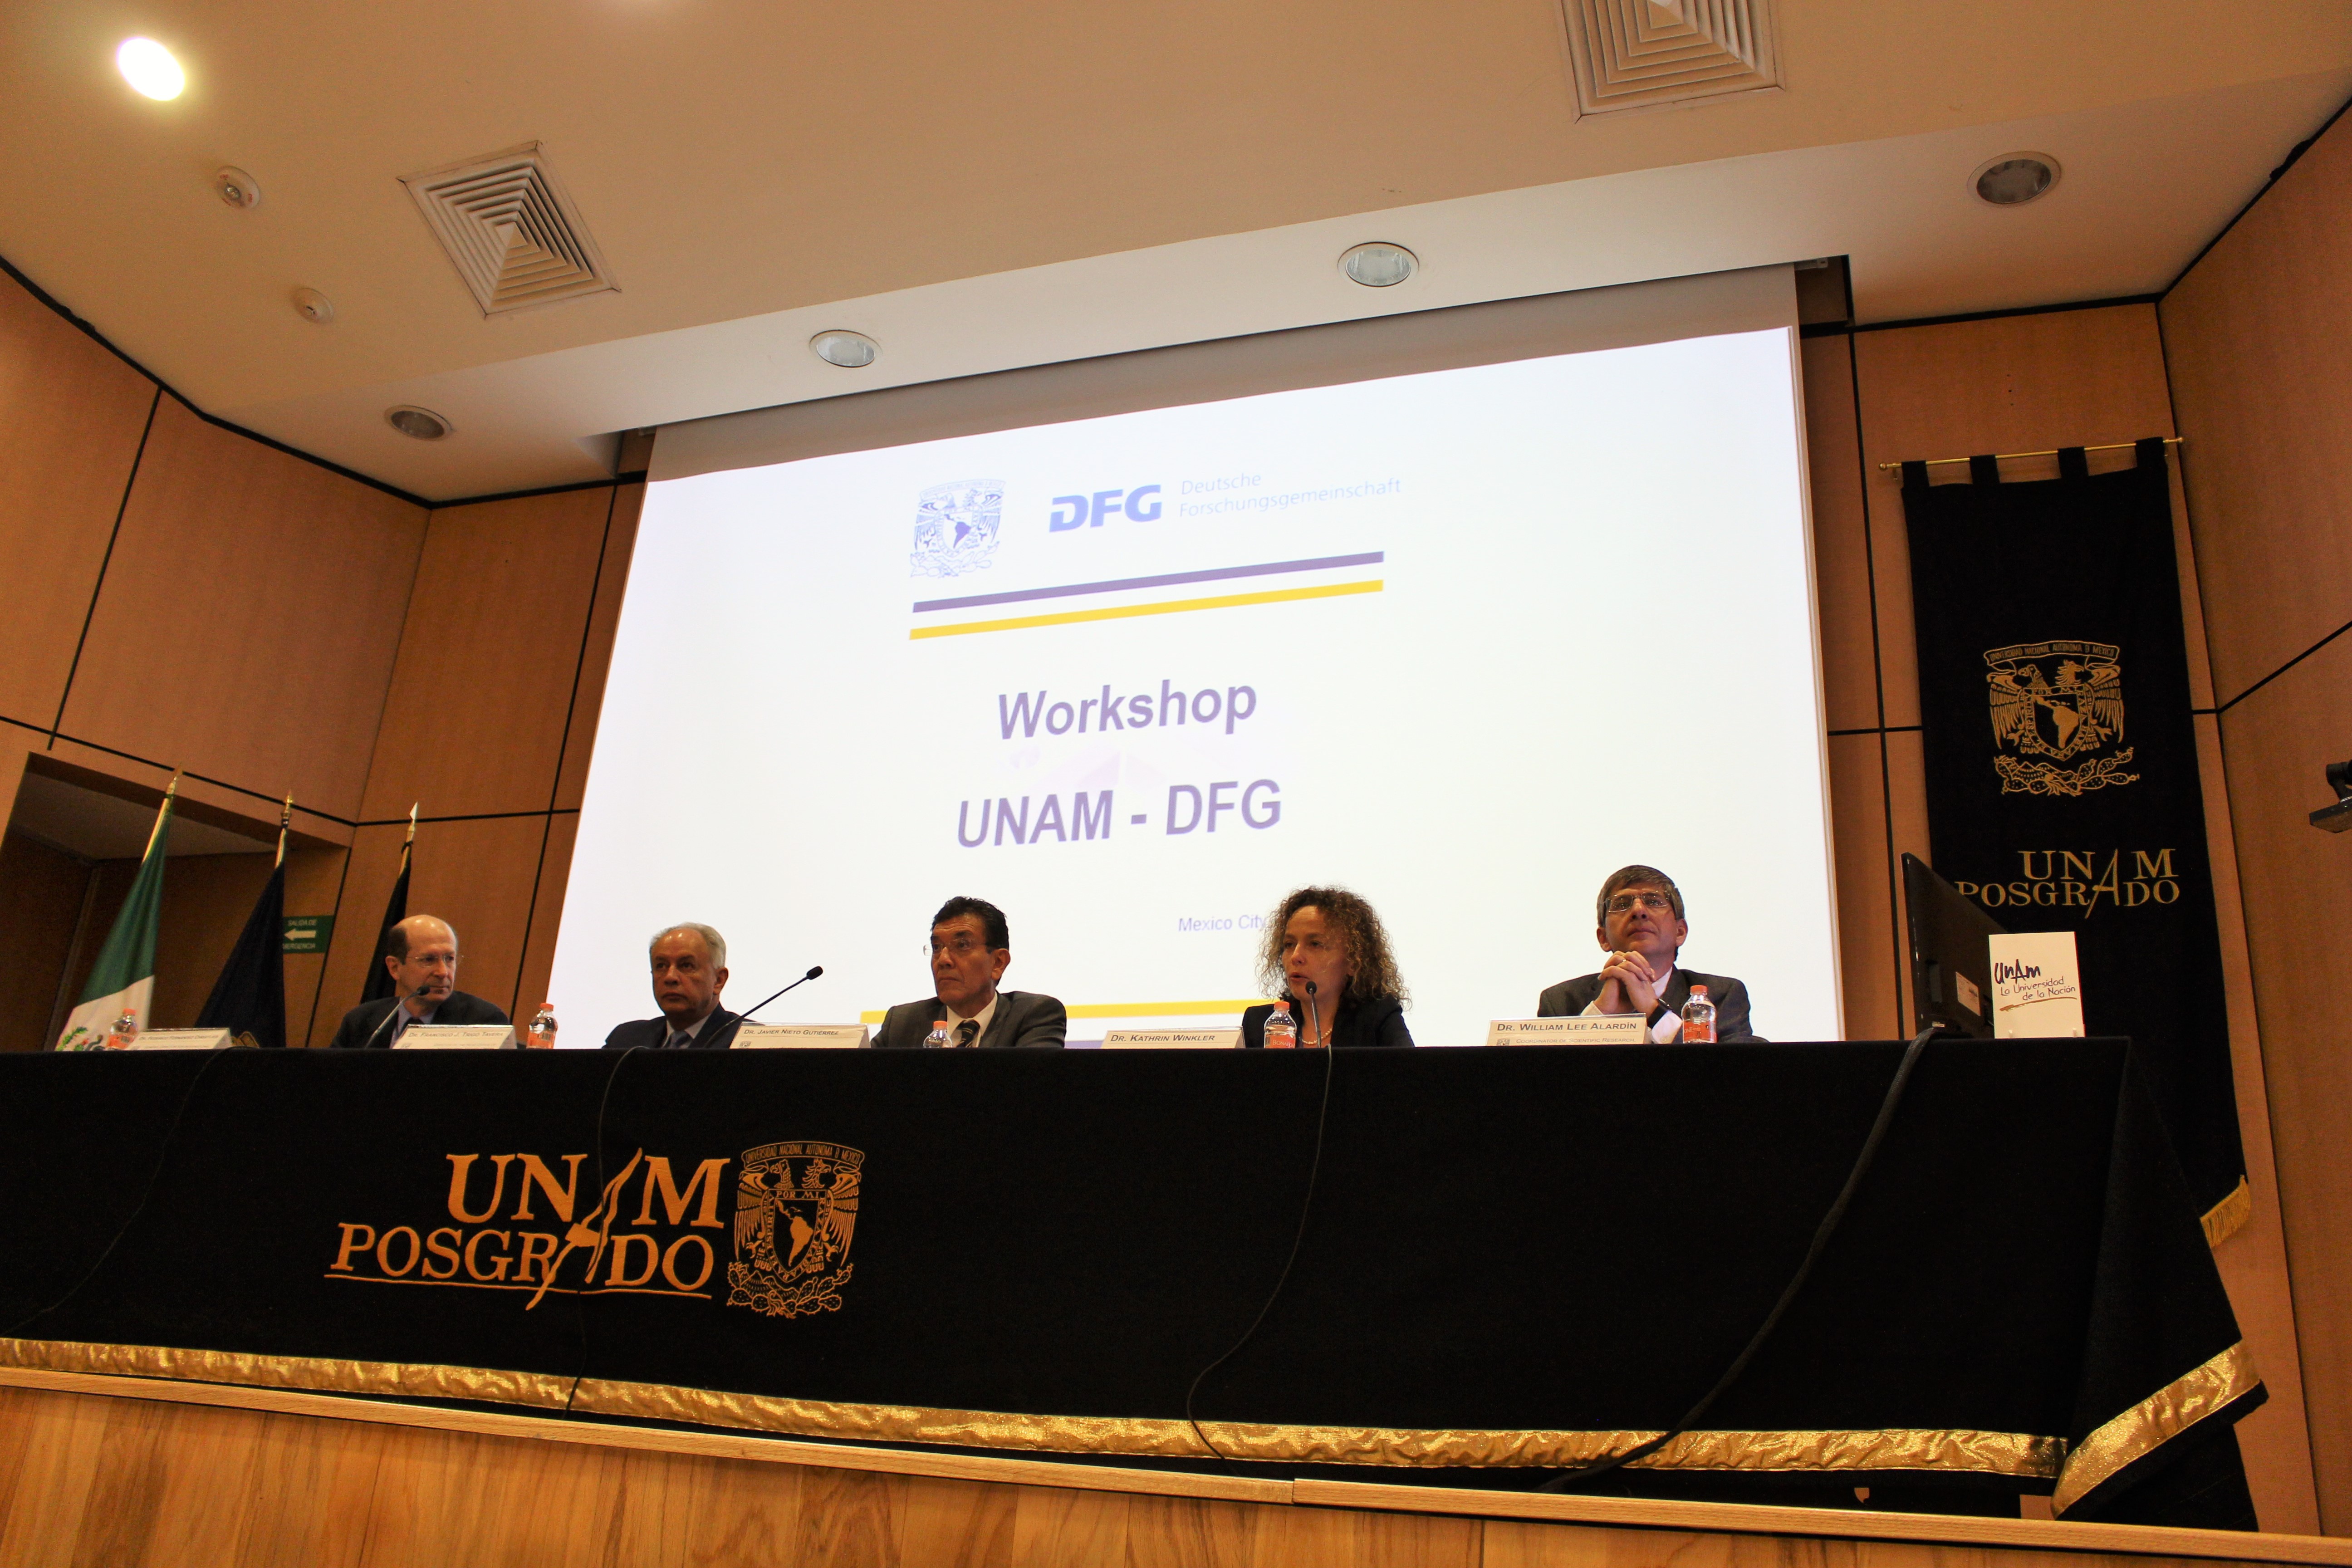 Frederico Christlieb (UNAM), Francisco Trigo Tavera (UNAM), Javier Nieto Gutiérrez (UNAM), Kathrin Winkler (DFG) und William Lee Alardin (UNAM) bei der Eröffnung des Workshops